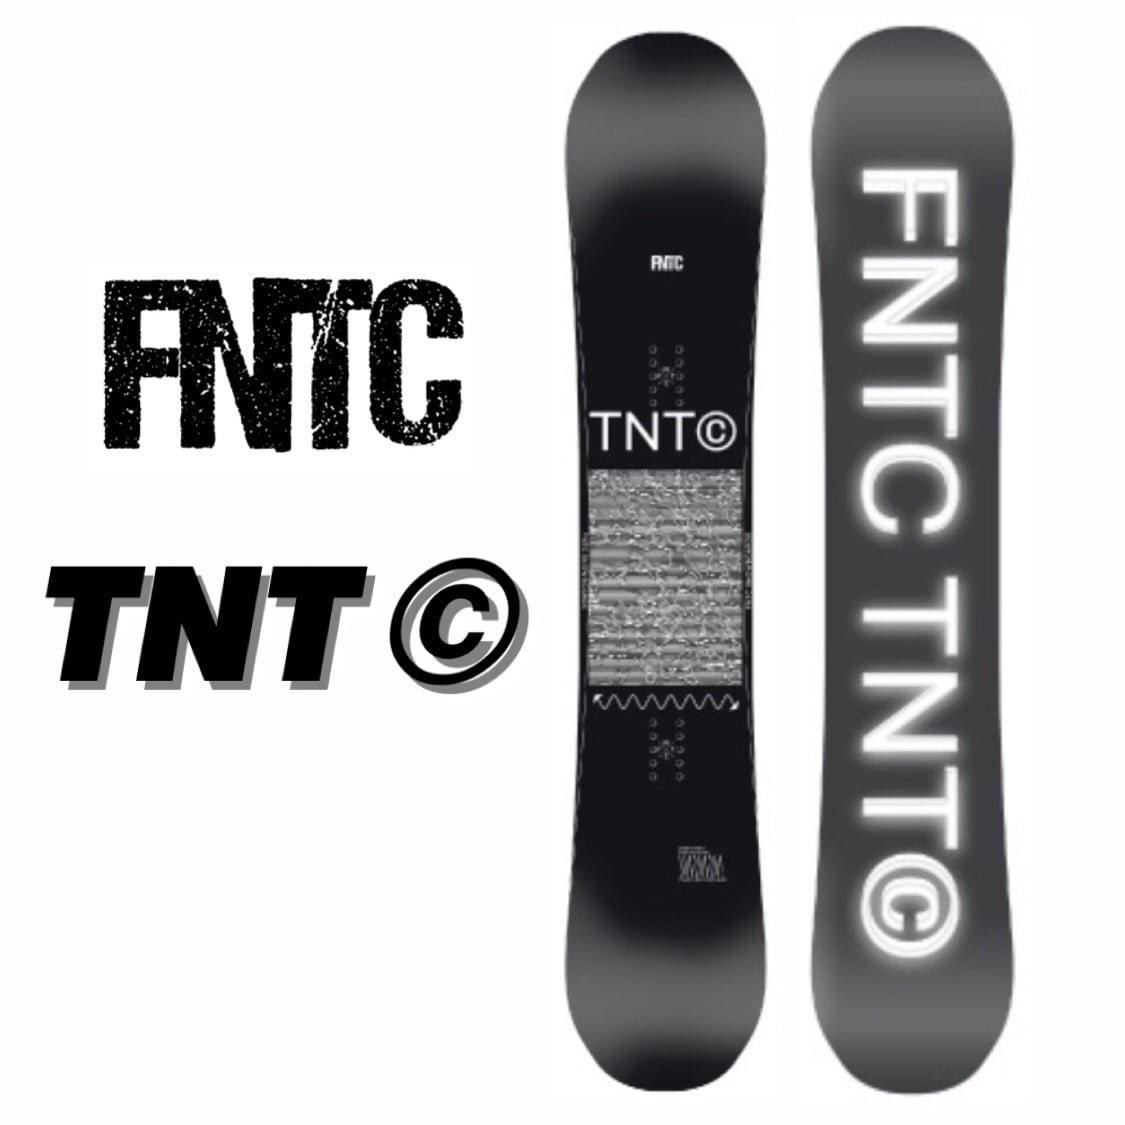 22-23 FNTC TNT C スノーボード エフエヌティーシー カービング